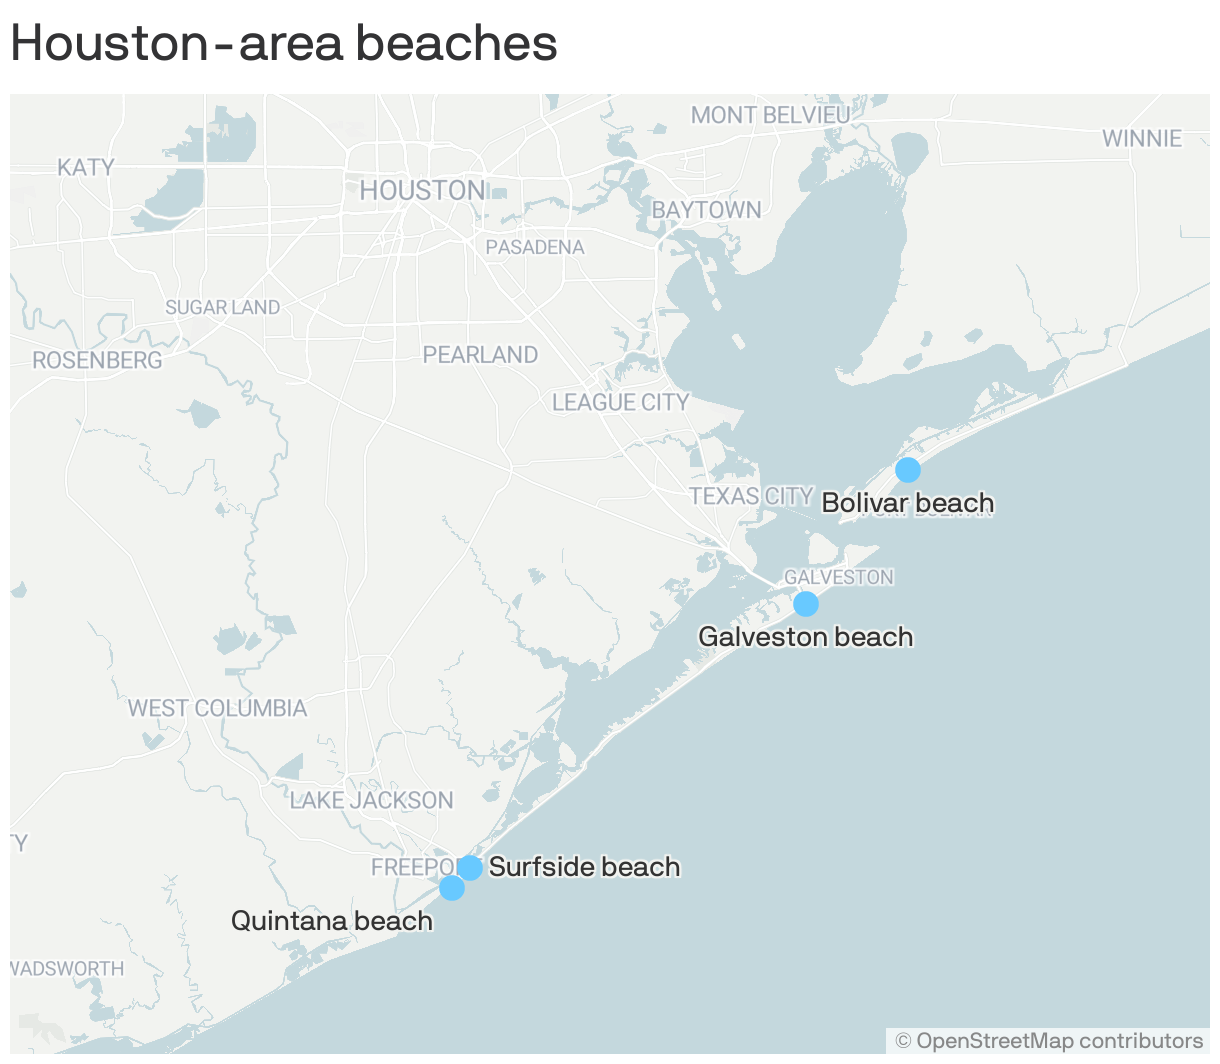 Houston-area beaches